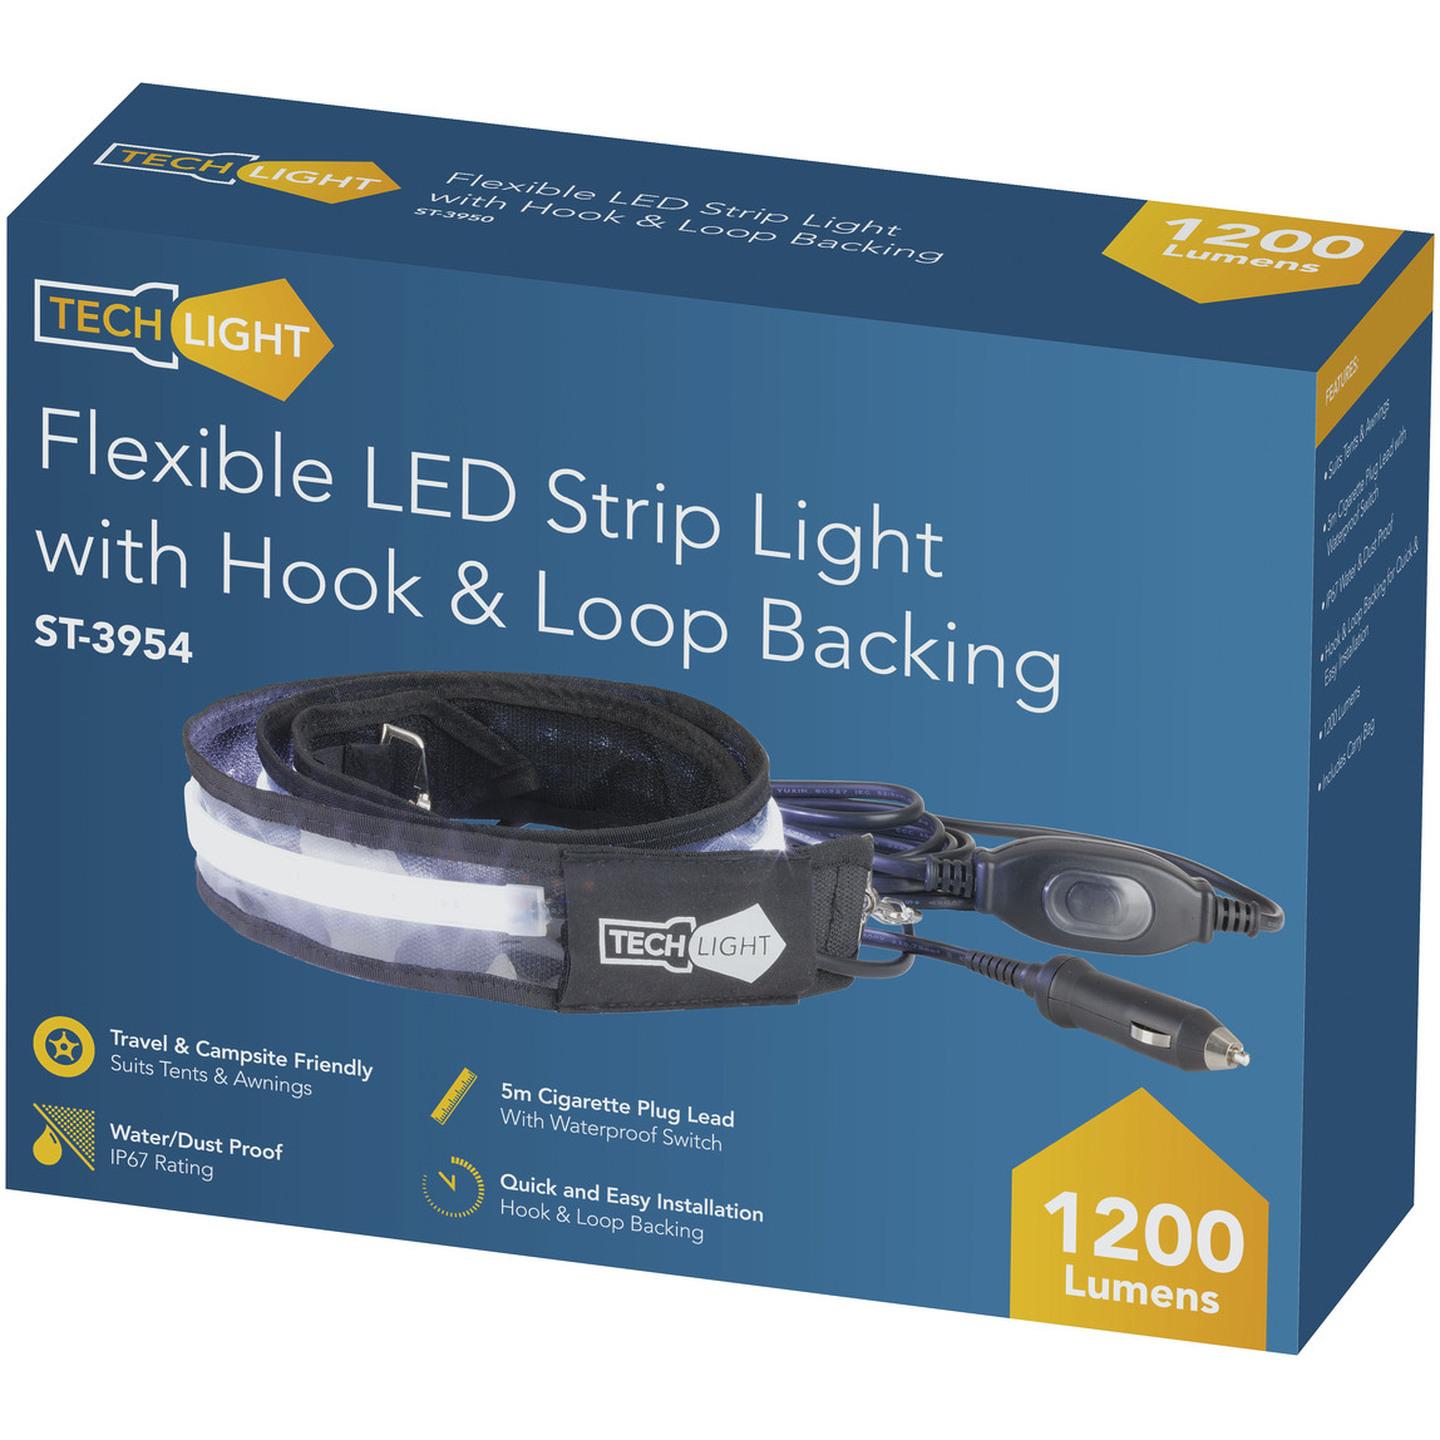 Flexible LED Strip light for Outdoors